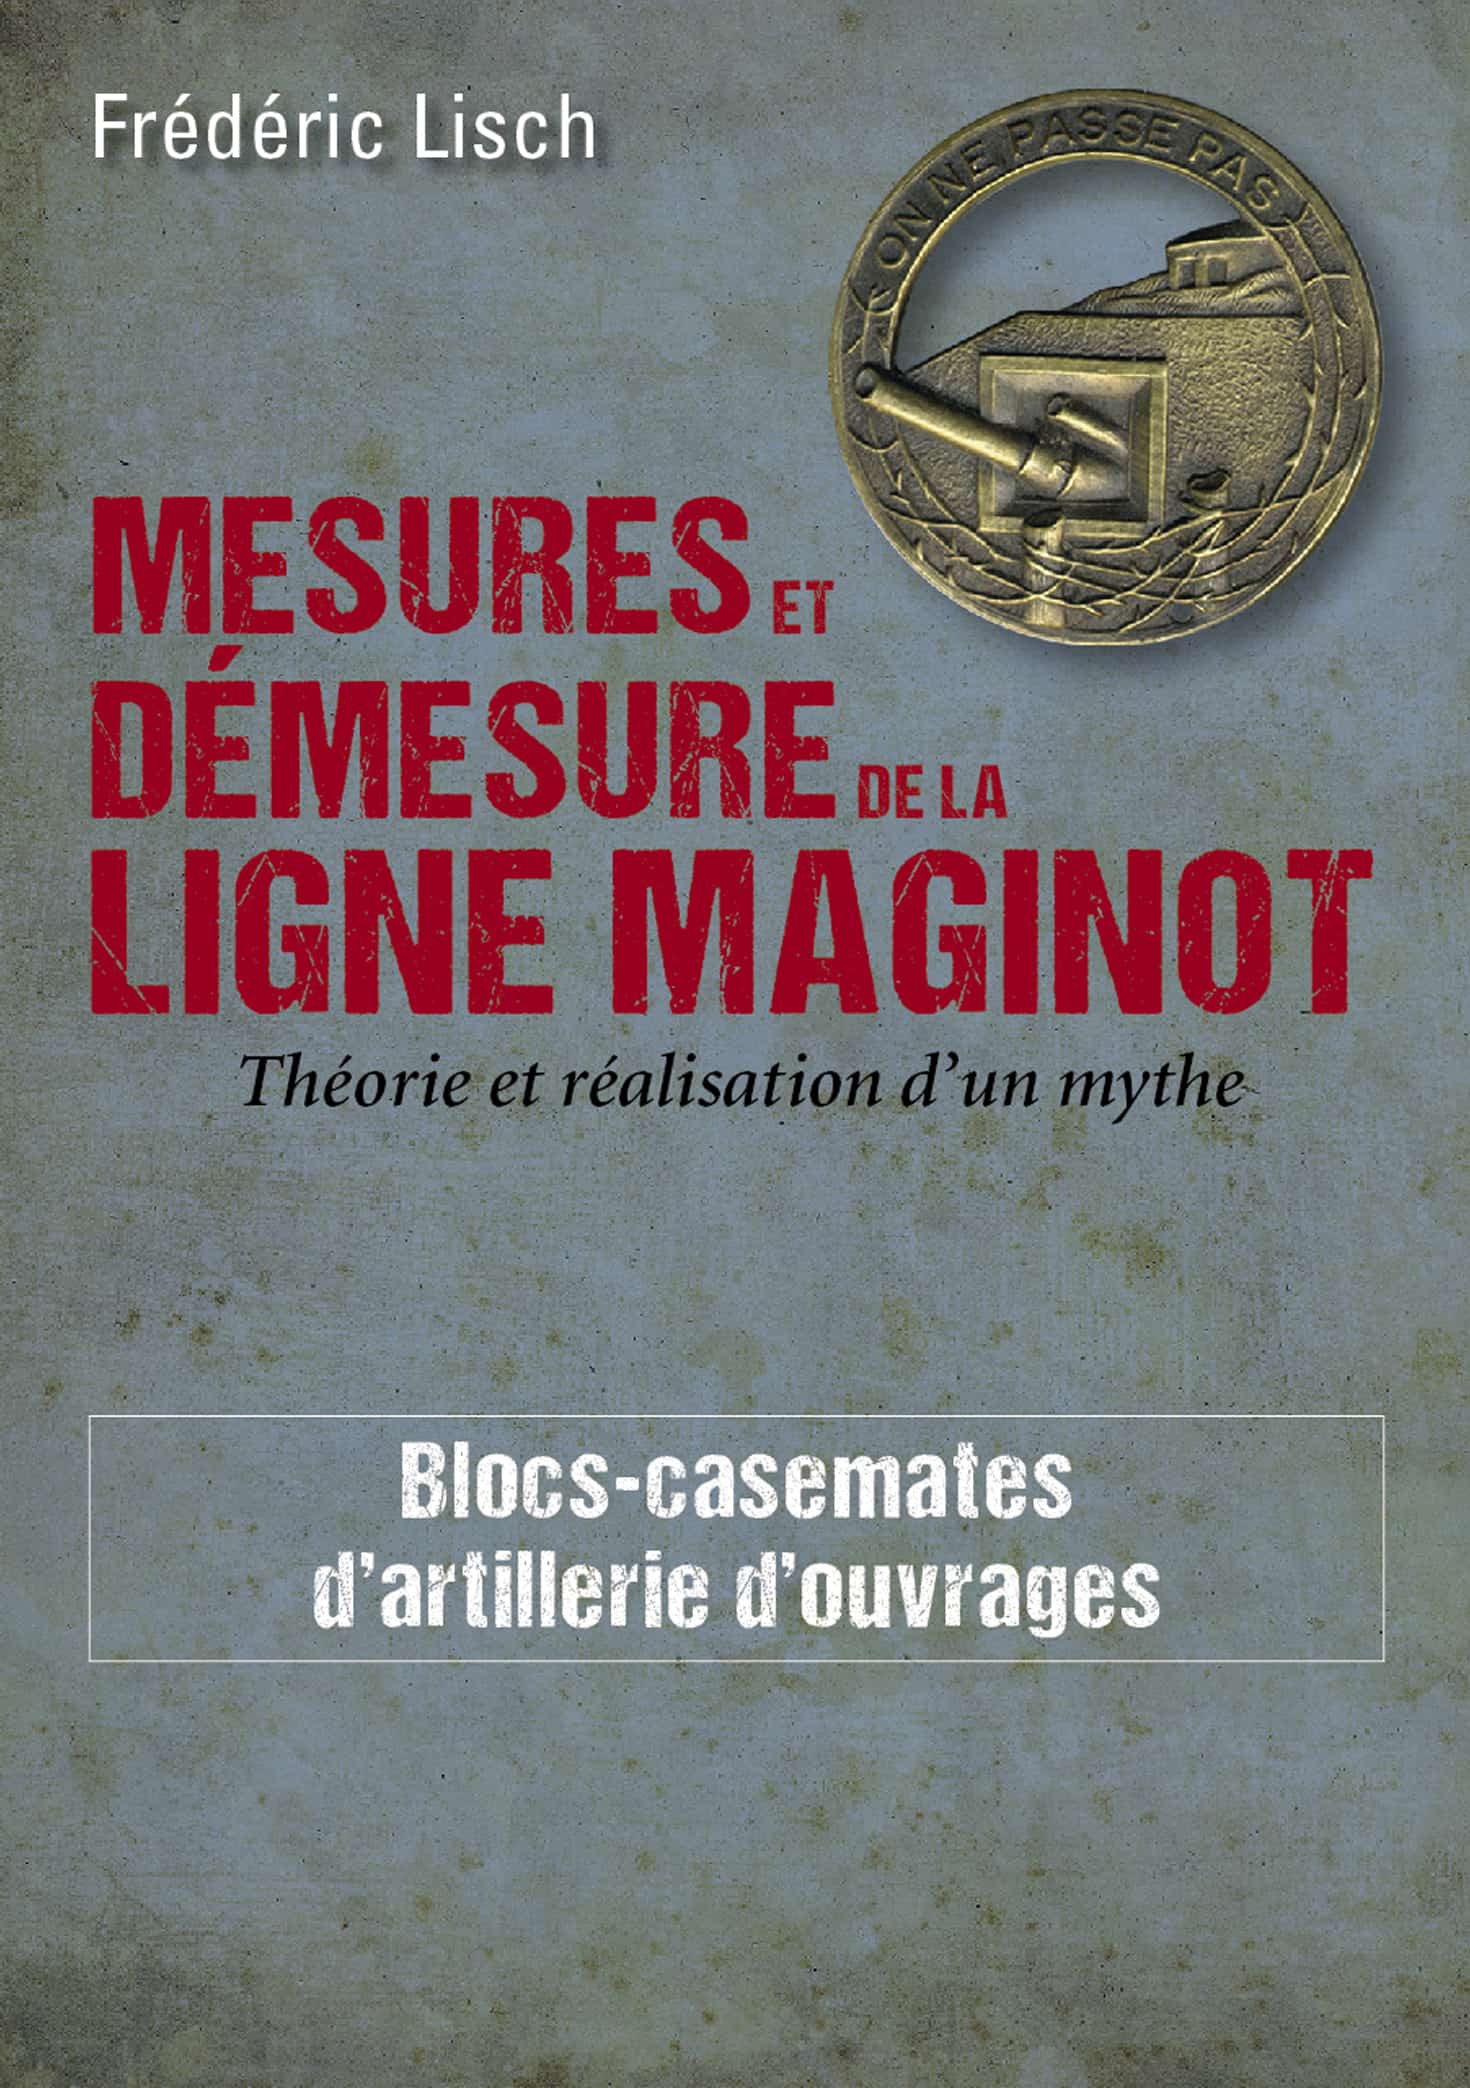 Livre - Mesures et démesure de la ligne Maginot - Tome 1 (Fréderic Lisch) - Fréderic Lisch